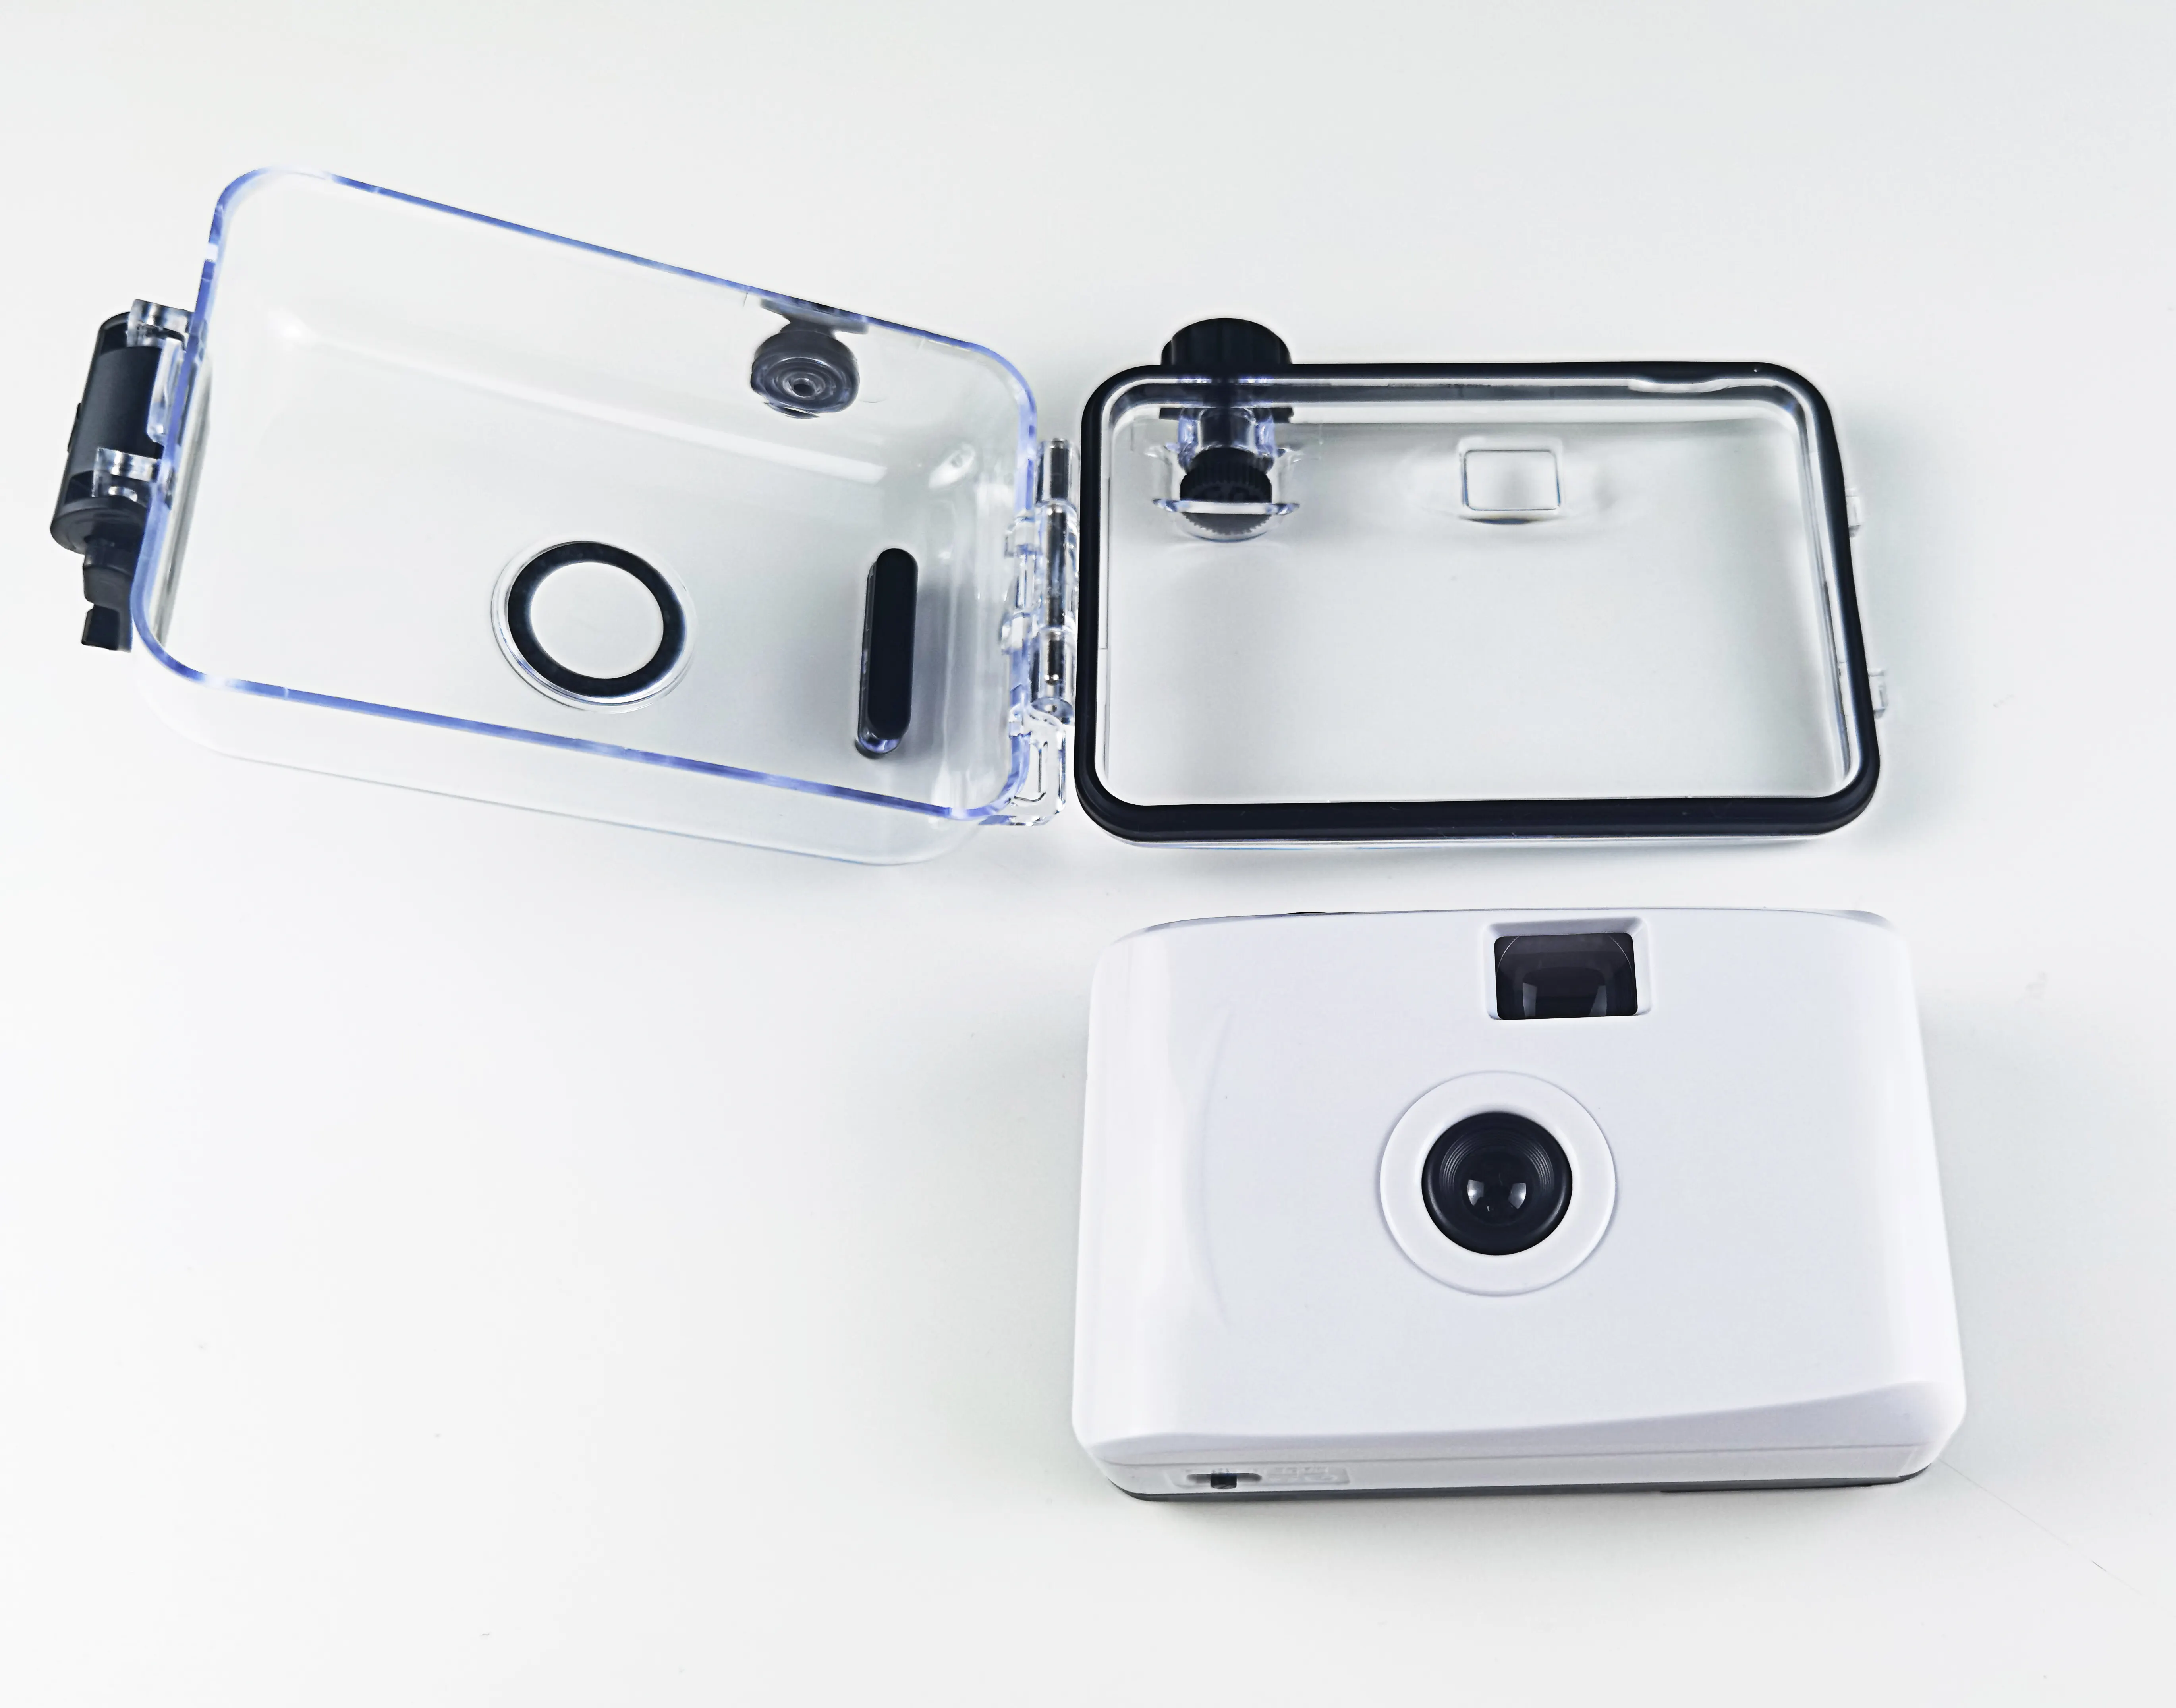 OEM, оптовая продажа, изготовленная на заказ Водонепроницаемая пленочная камера без одного времени, пленка 35 мм, ретро пленочная камера для детей